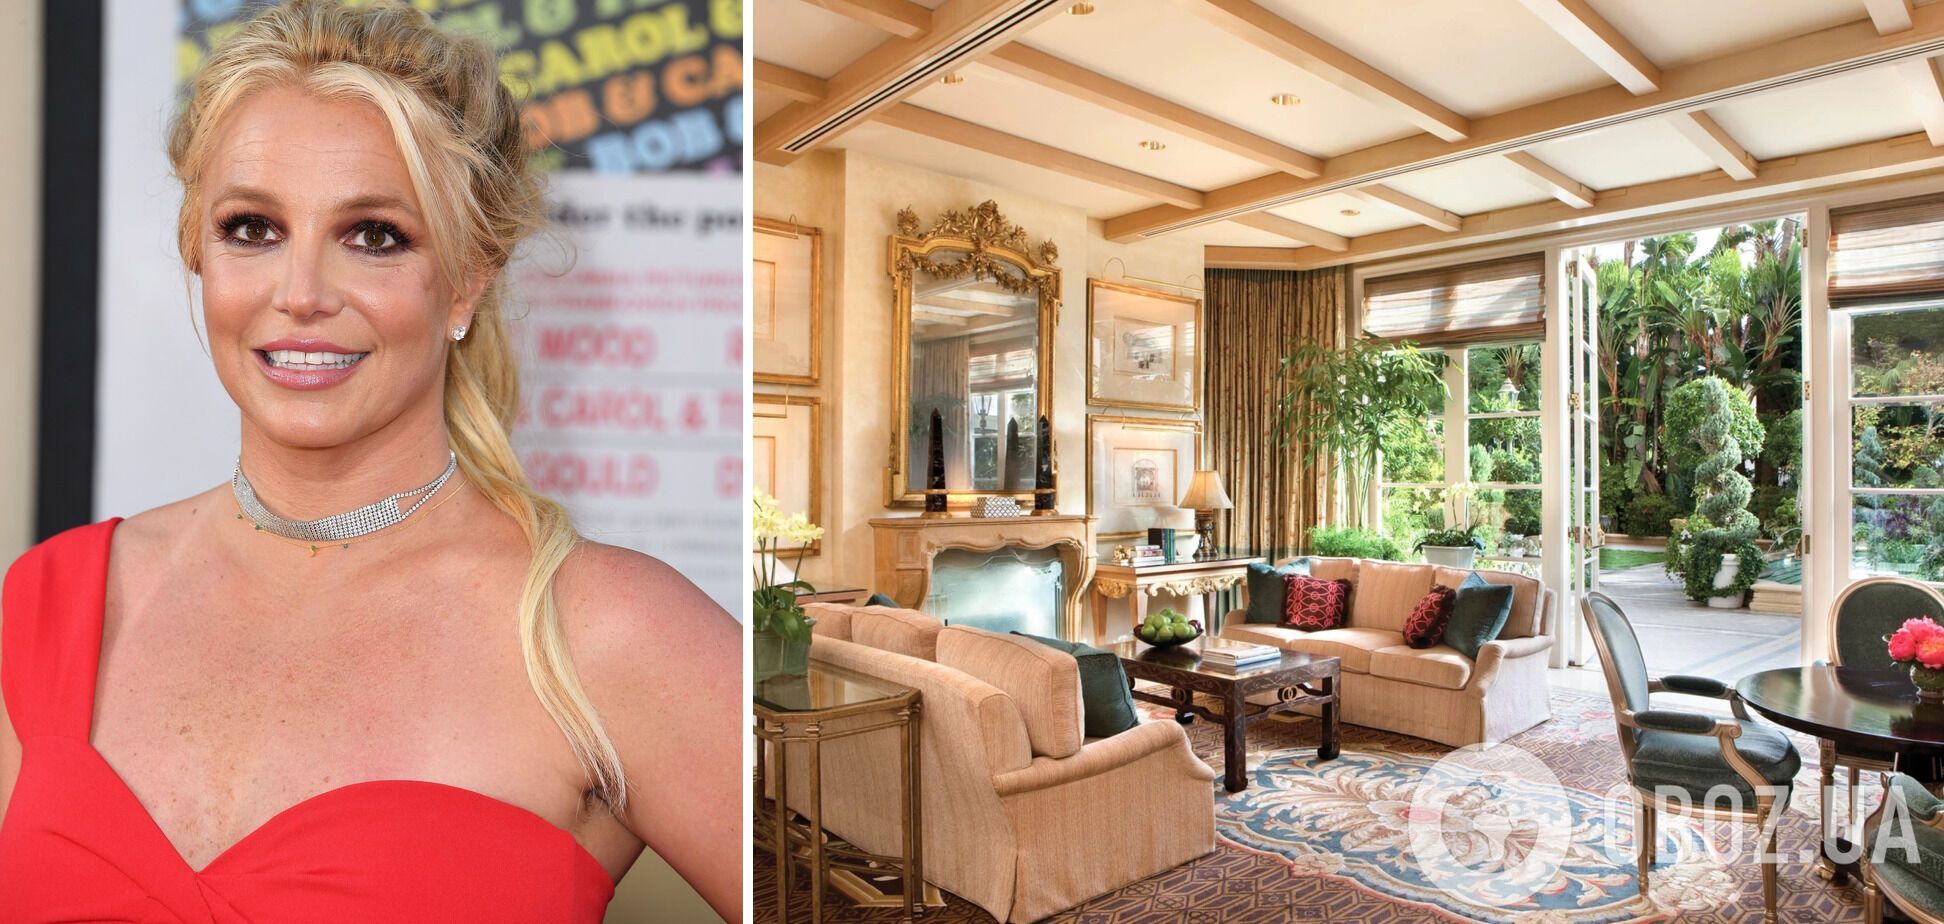 Ходила гола біля басейну: Брітні Спірс потрапила до чорного списку елітного готелю в Лос-Анджелесі